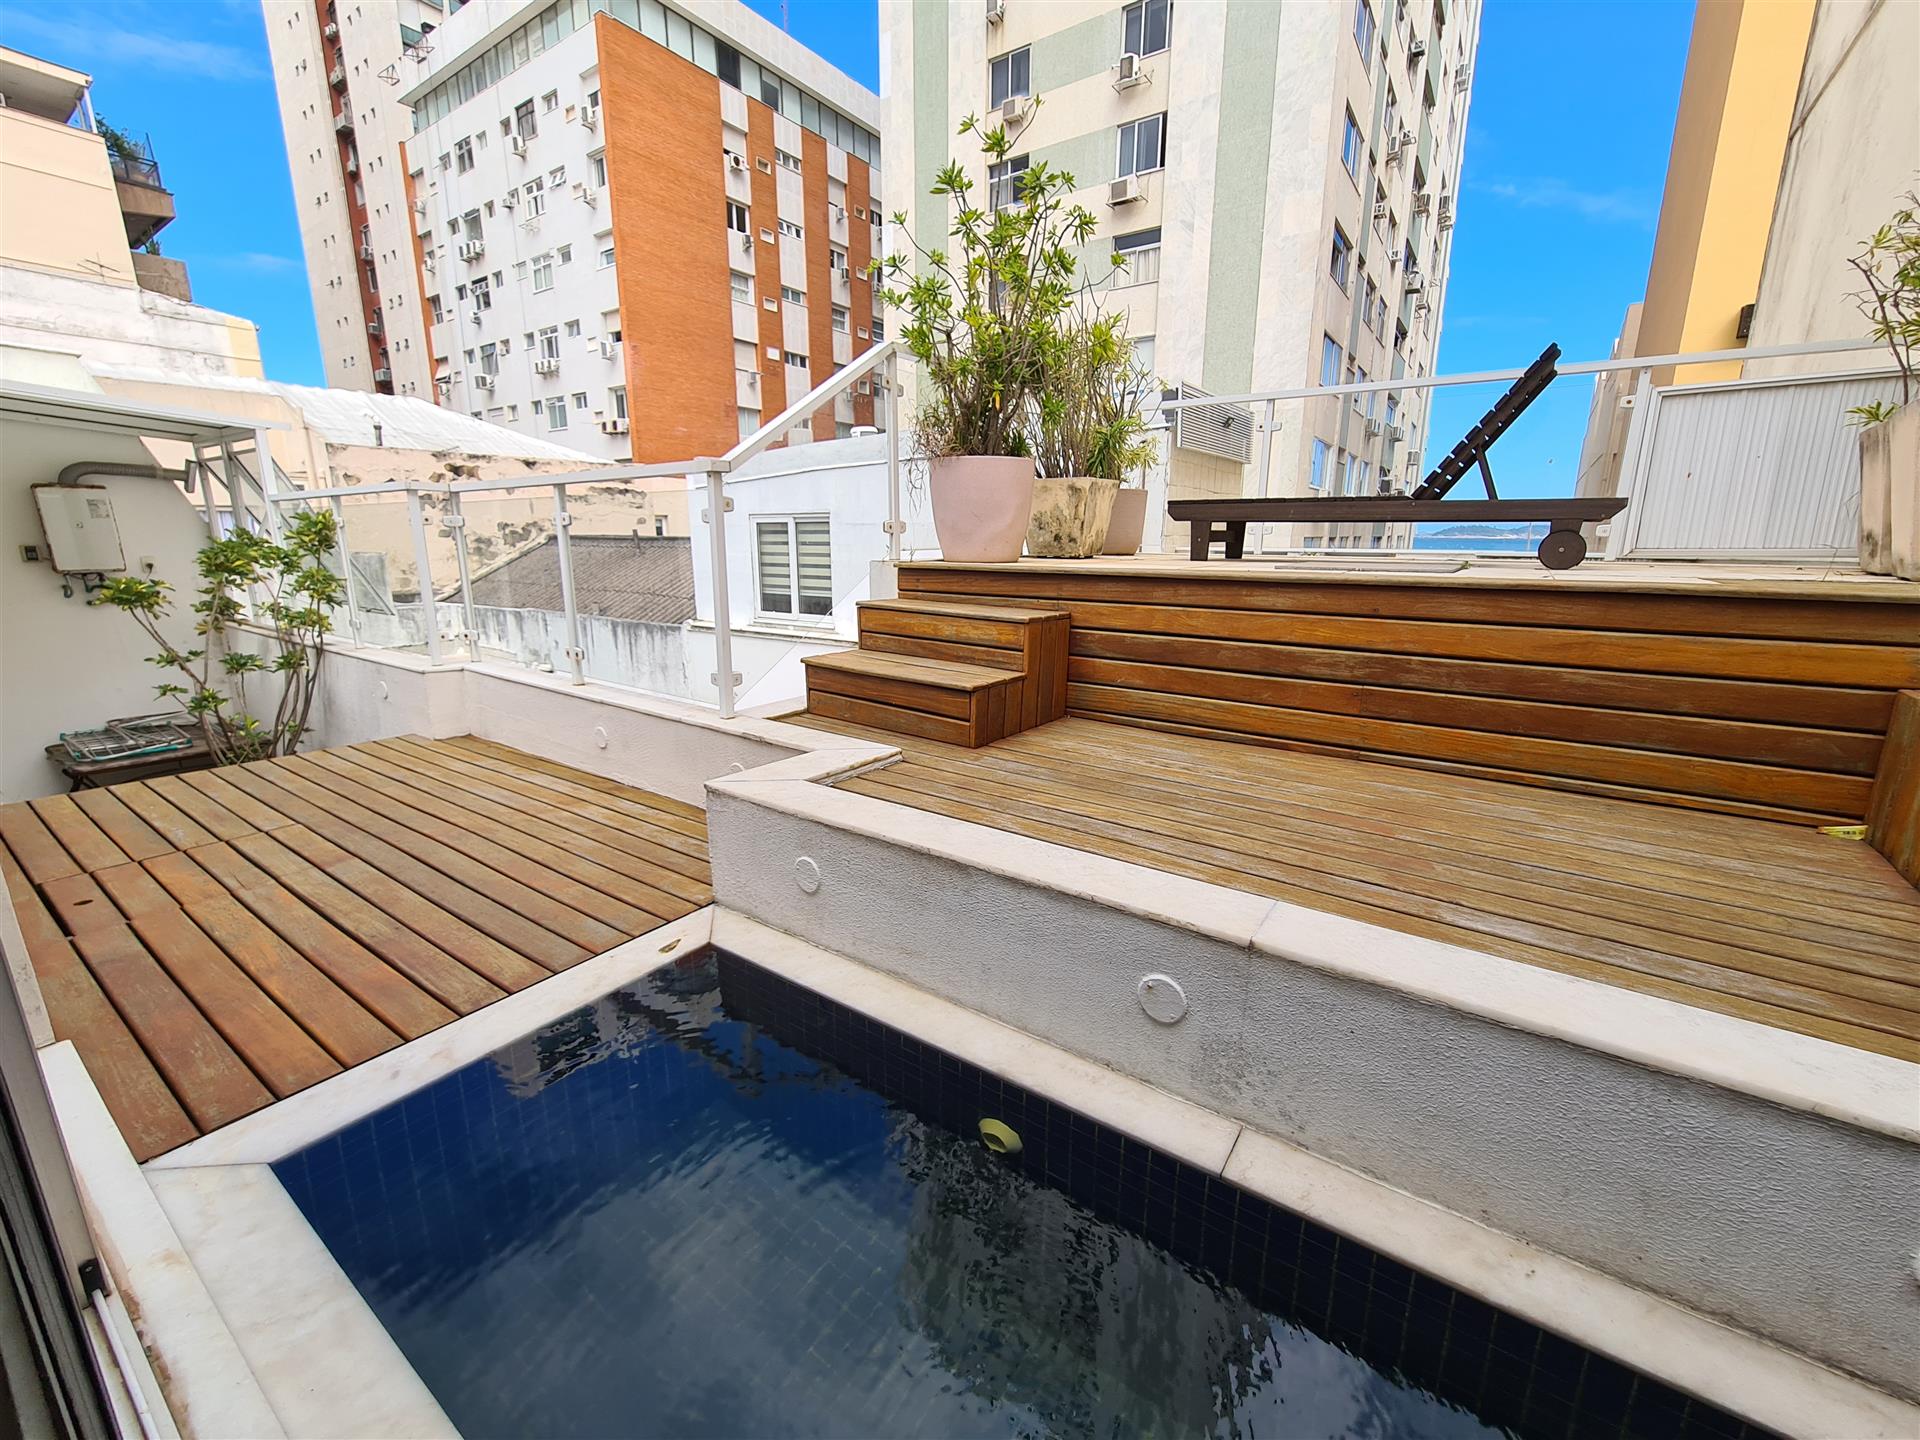 Duplex-Penthouse renoviert und im zeitgenössischen Stil dekoriert zum Verkauf in Ipanema